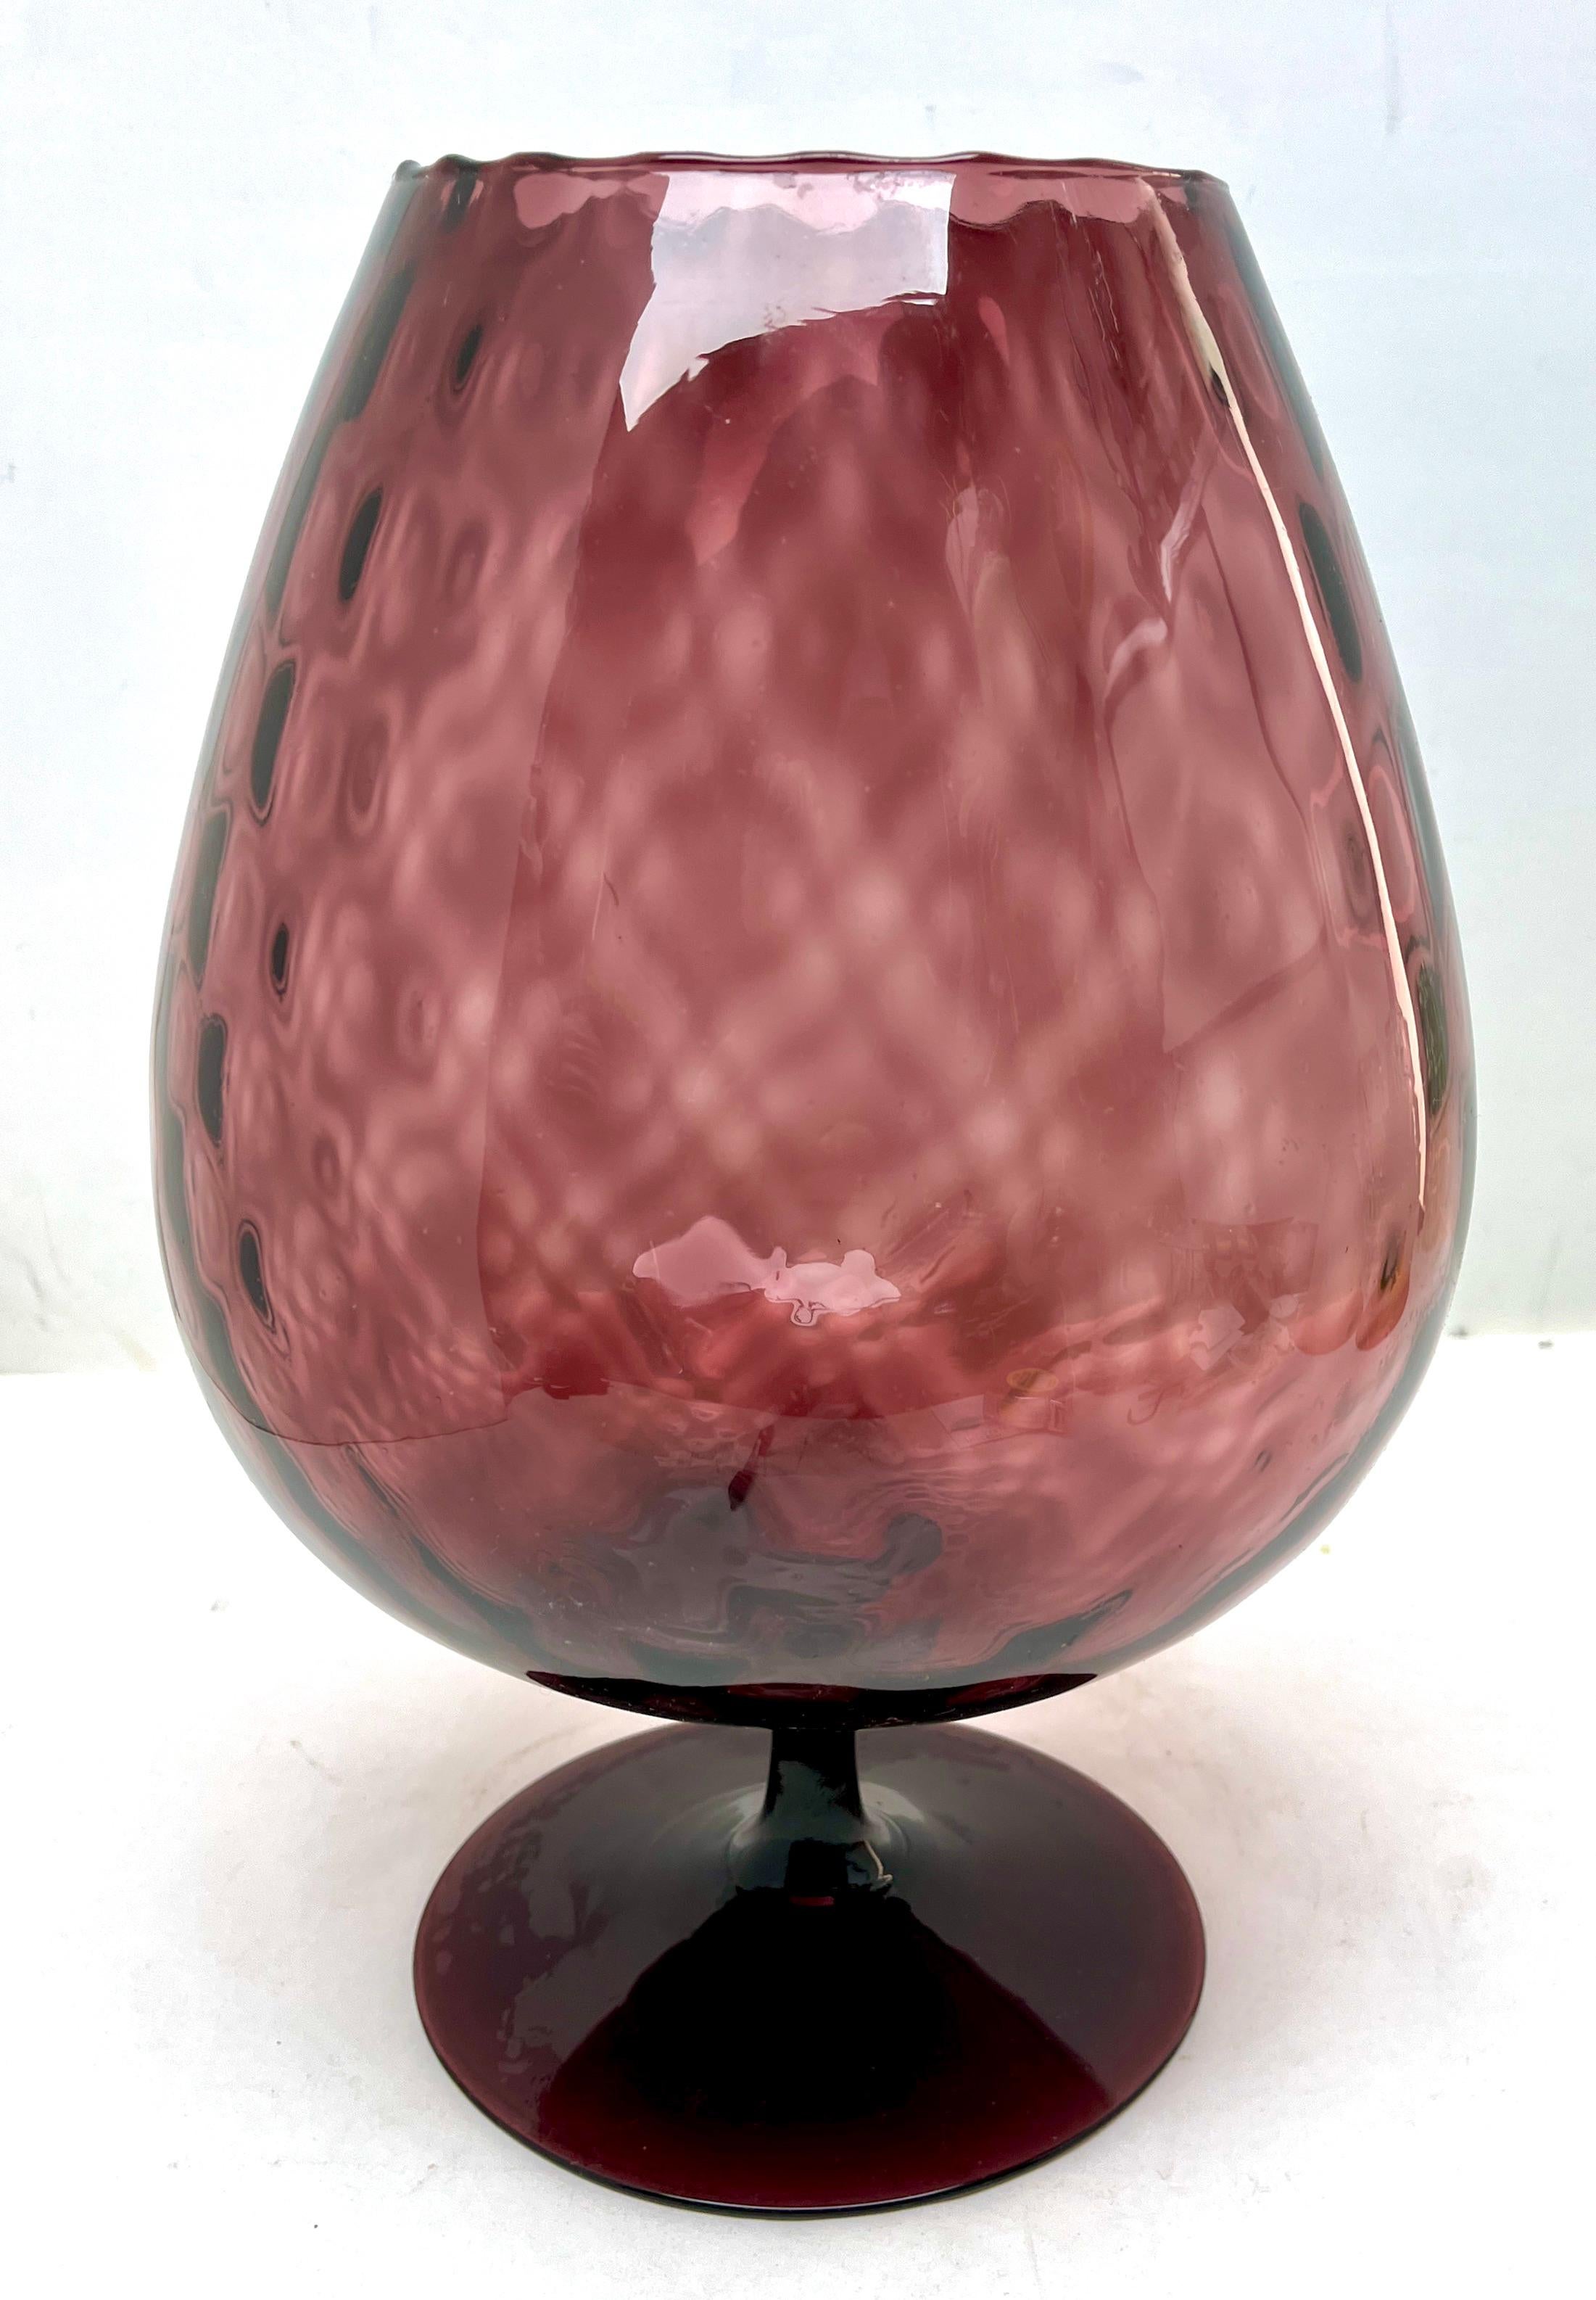 Vase en verre d'art italien opalescent Opaline di Florence (Empoli) de la fin des années 1950 ou du début des années 1960. 

Magnifique opale soufflée à la main et appliquée à la main sur un pied.
Mesures : 32 cm de haut, 20 cm de diamètre

La pièce